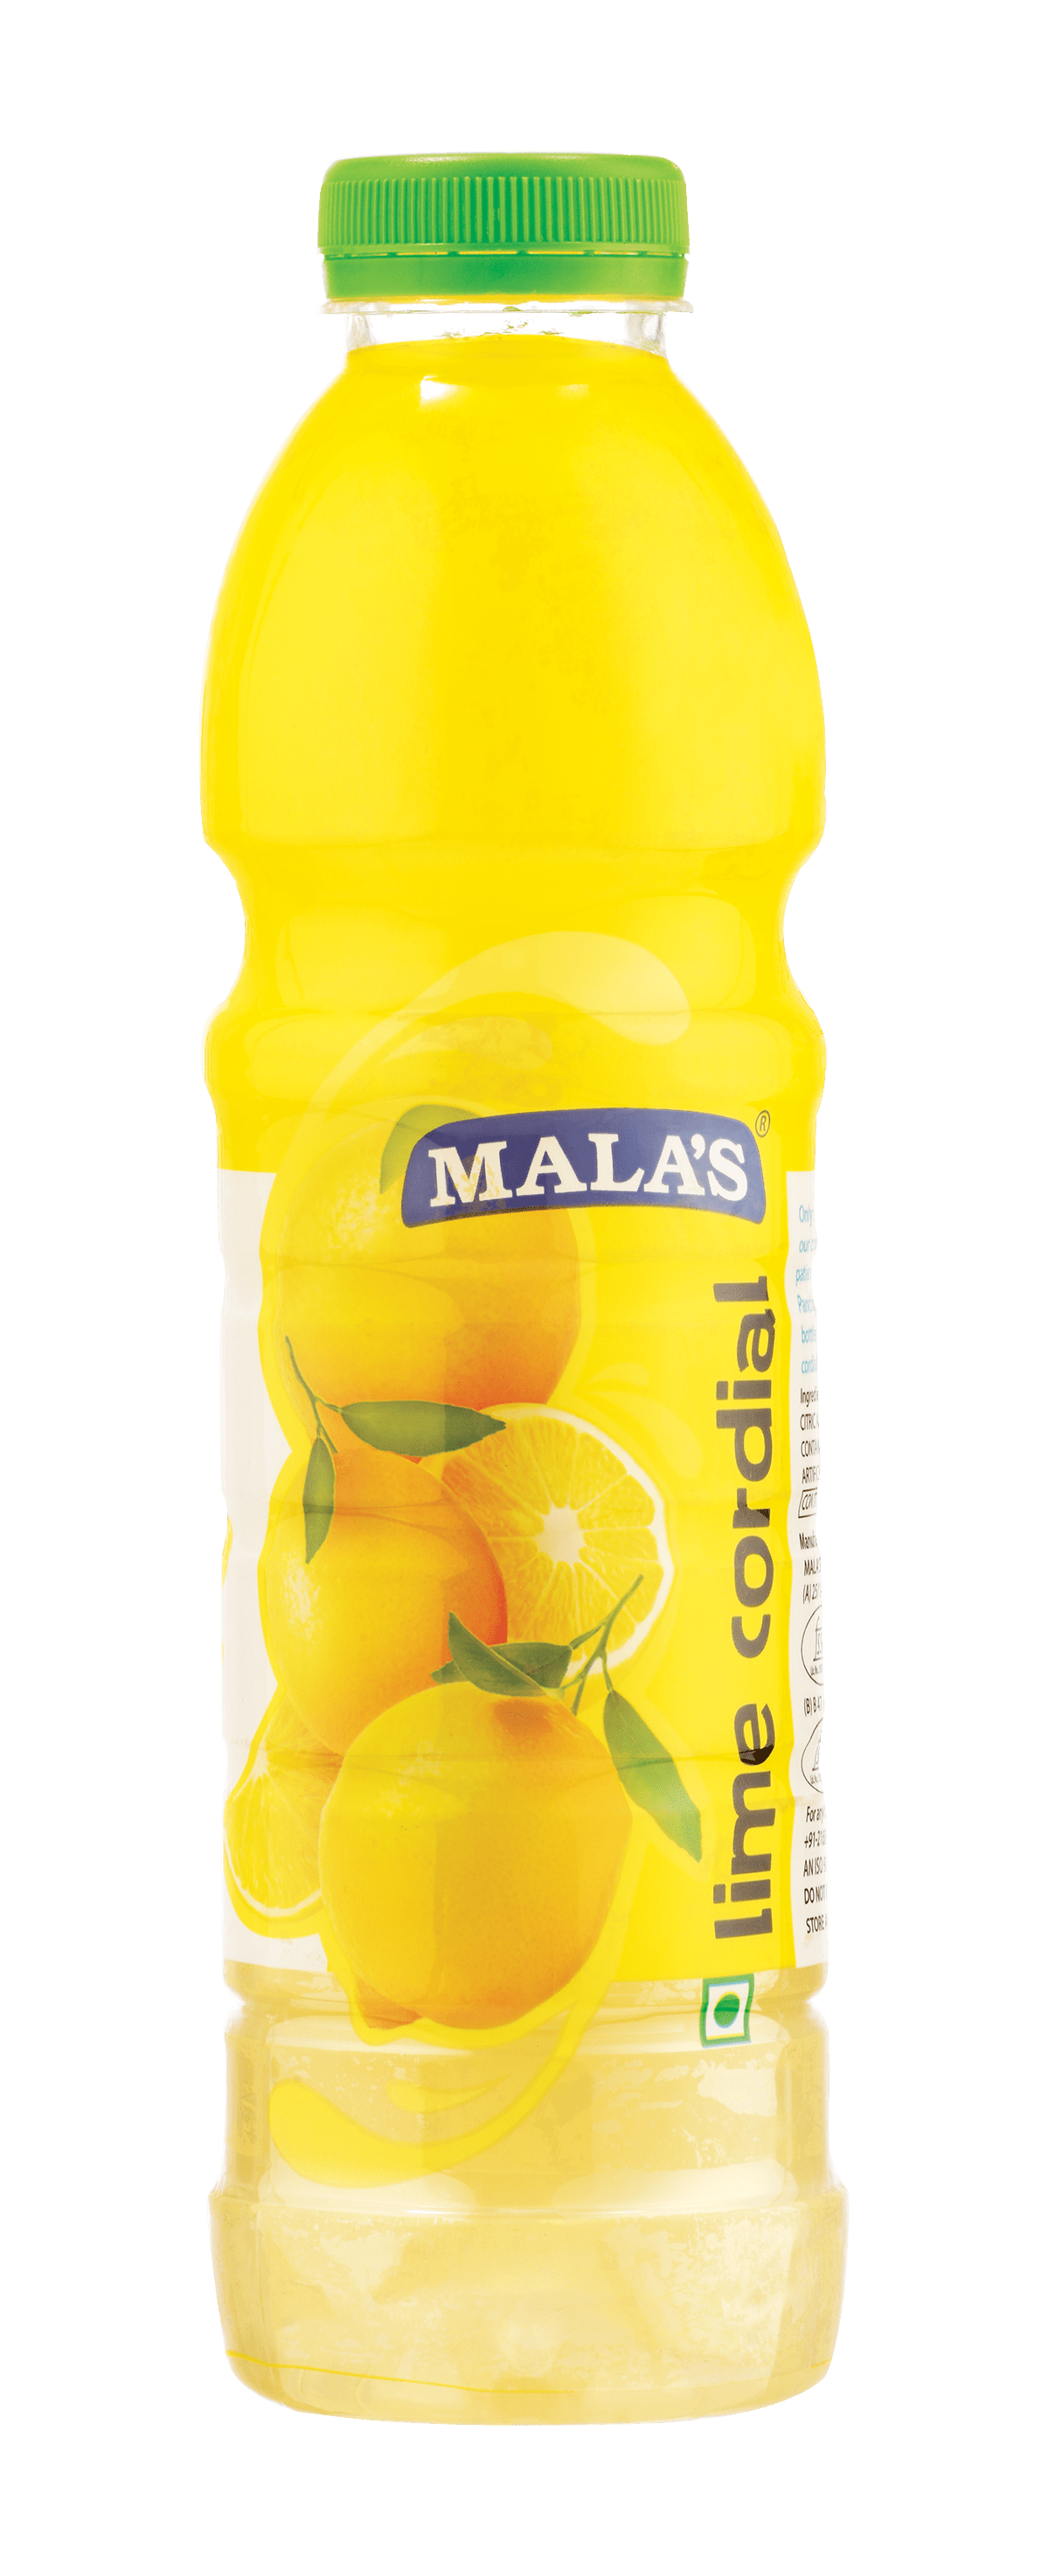 Malas Lime Cordial 750ml Pet Bottle CORDIAL Mala's